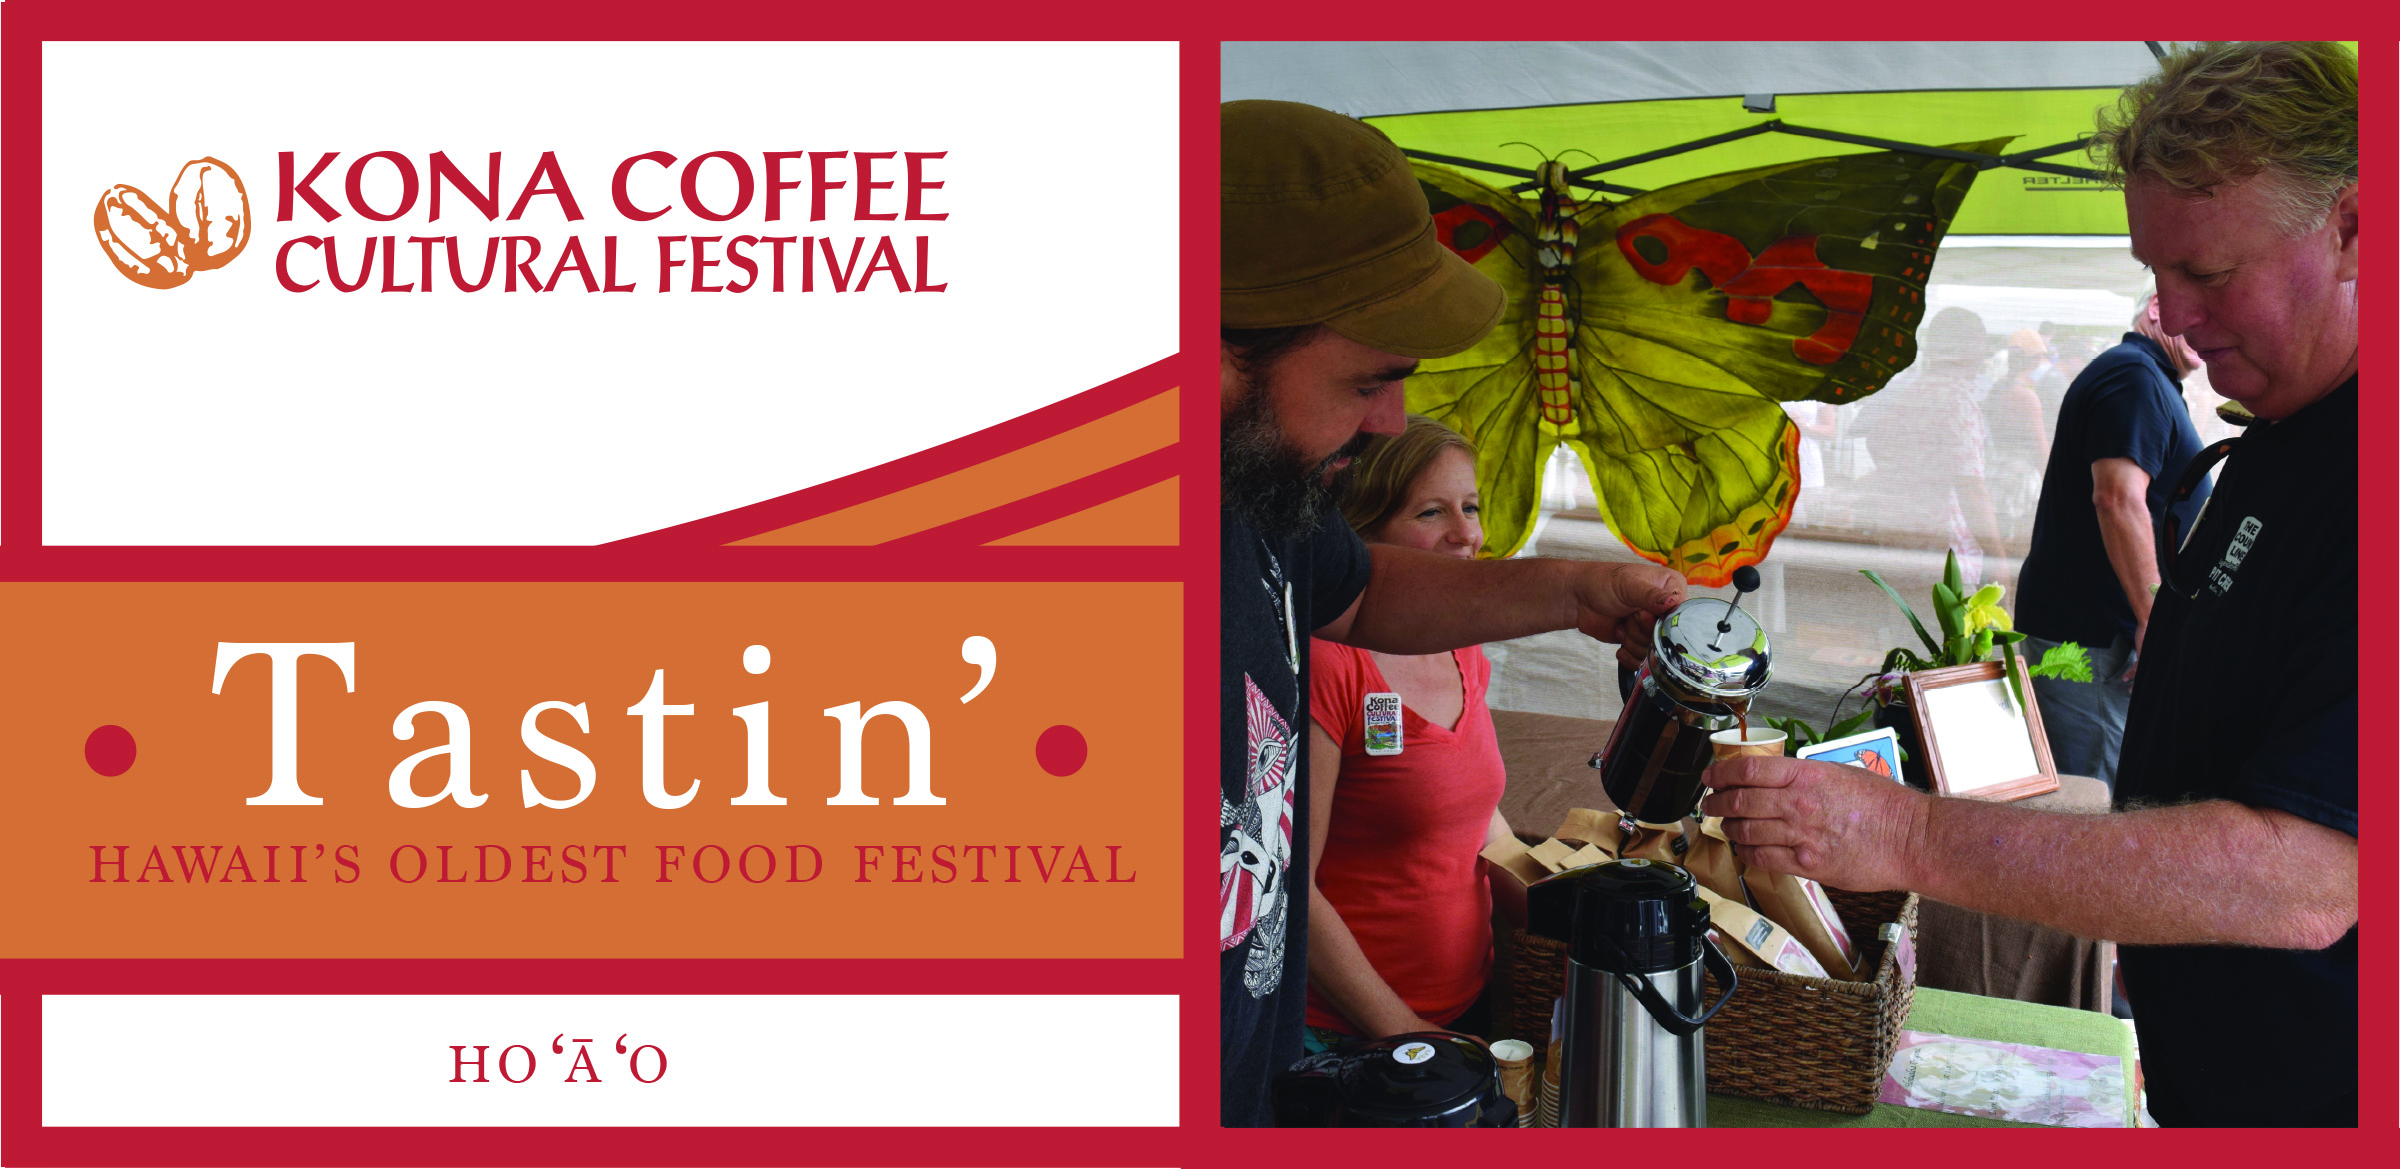 ハワイ島のコナ・コーヒー・カルチュラル・フェスティバル2019